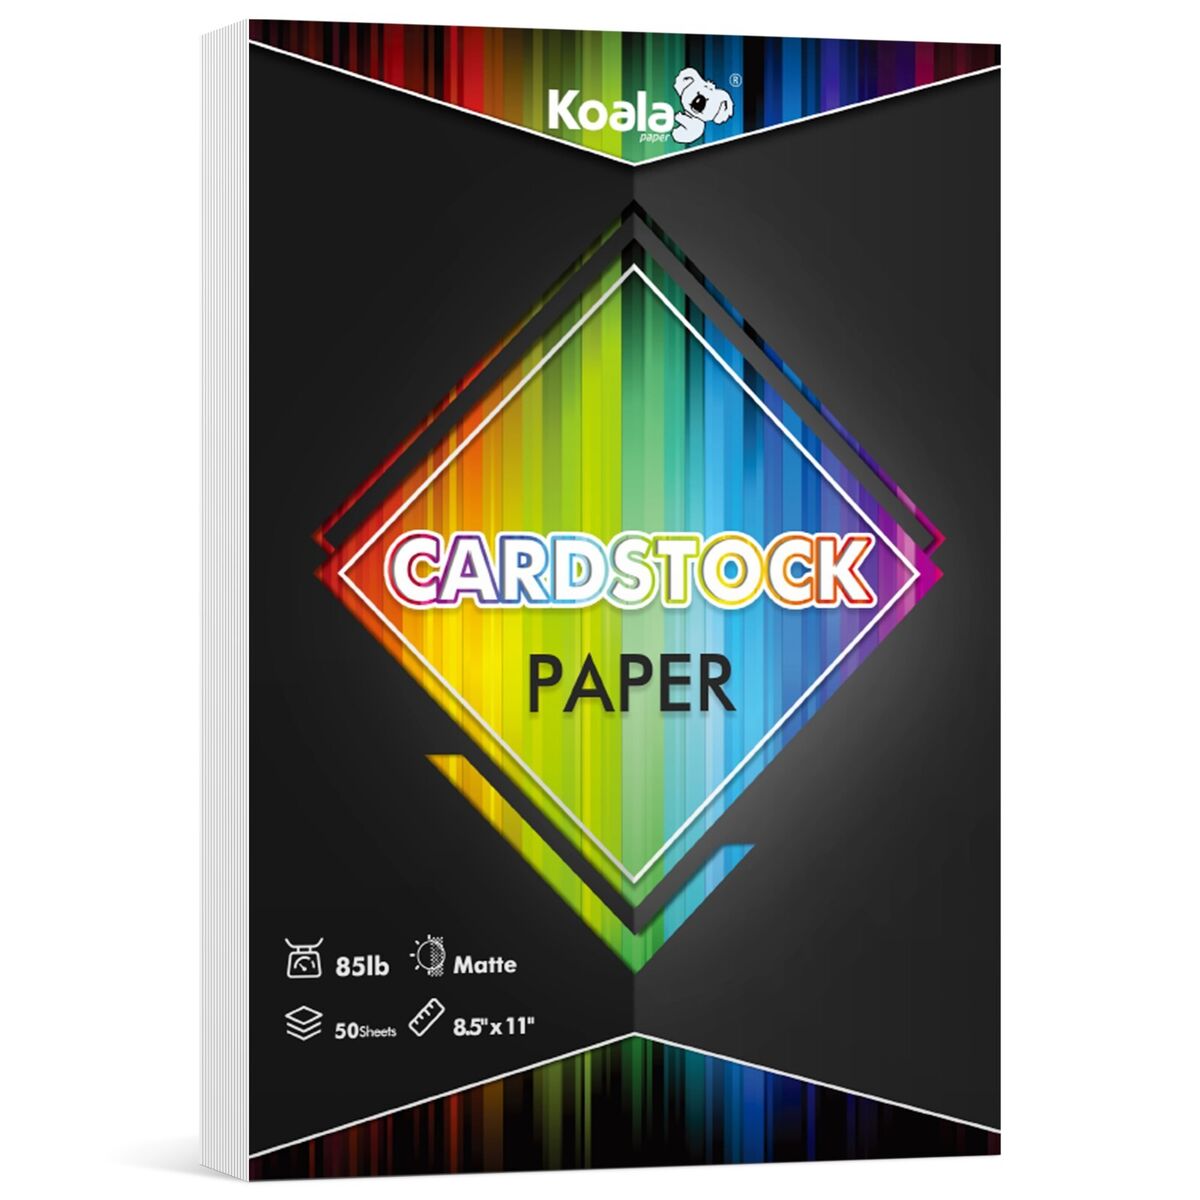 Lot Koala Cardstock Paper 8.5x11 White Matt Photo Paper Inkjet +